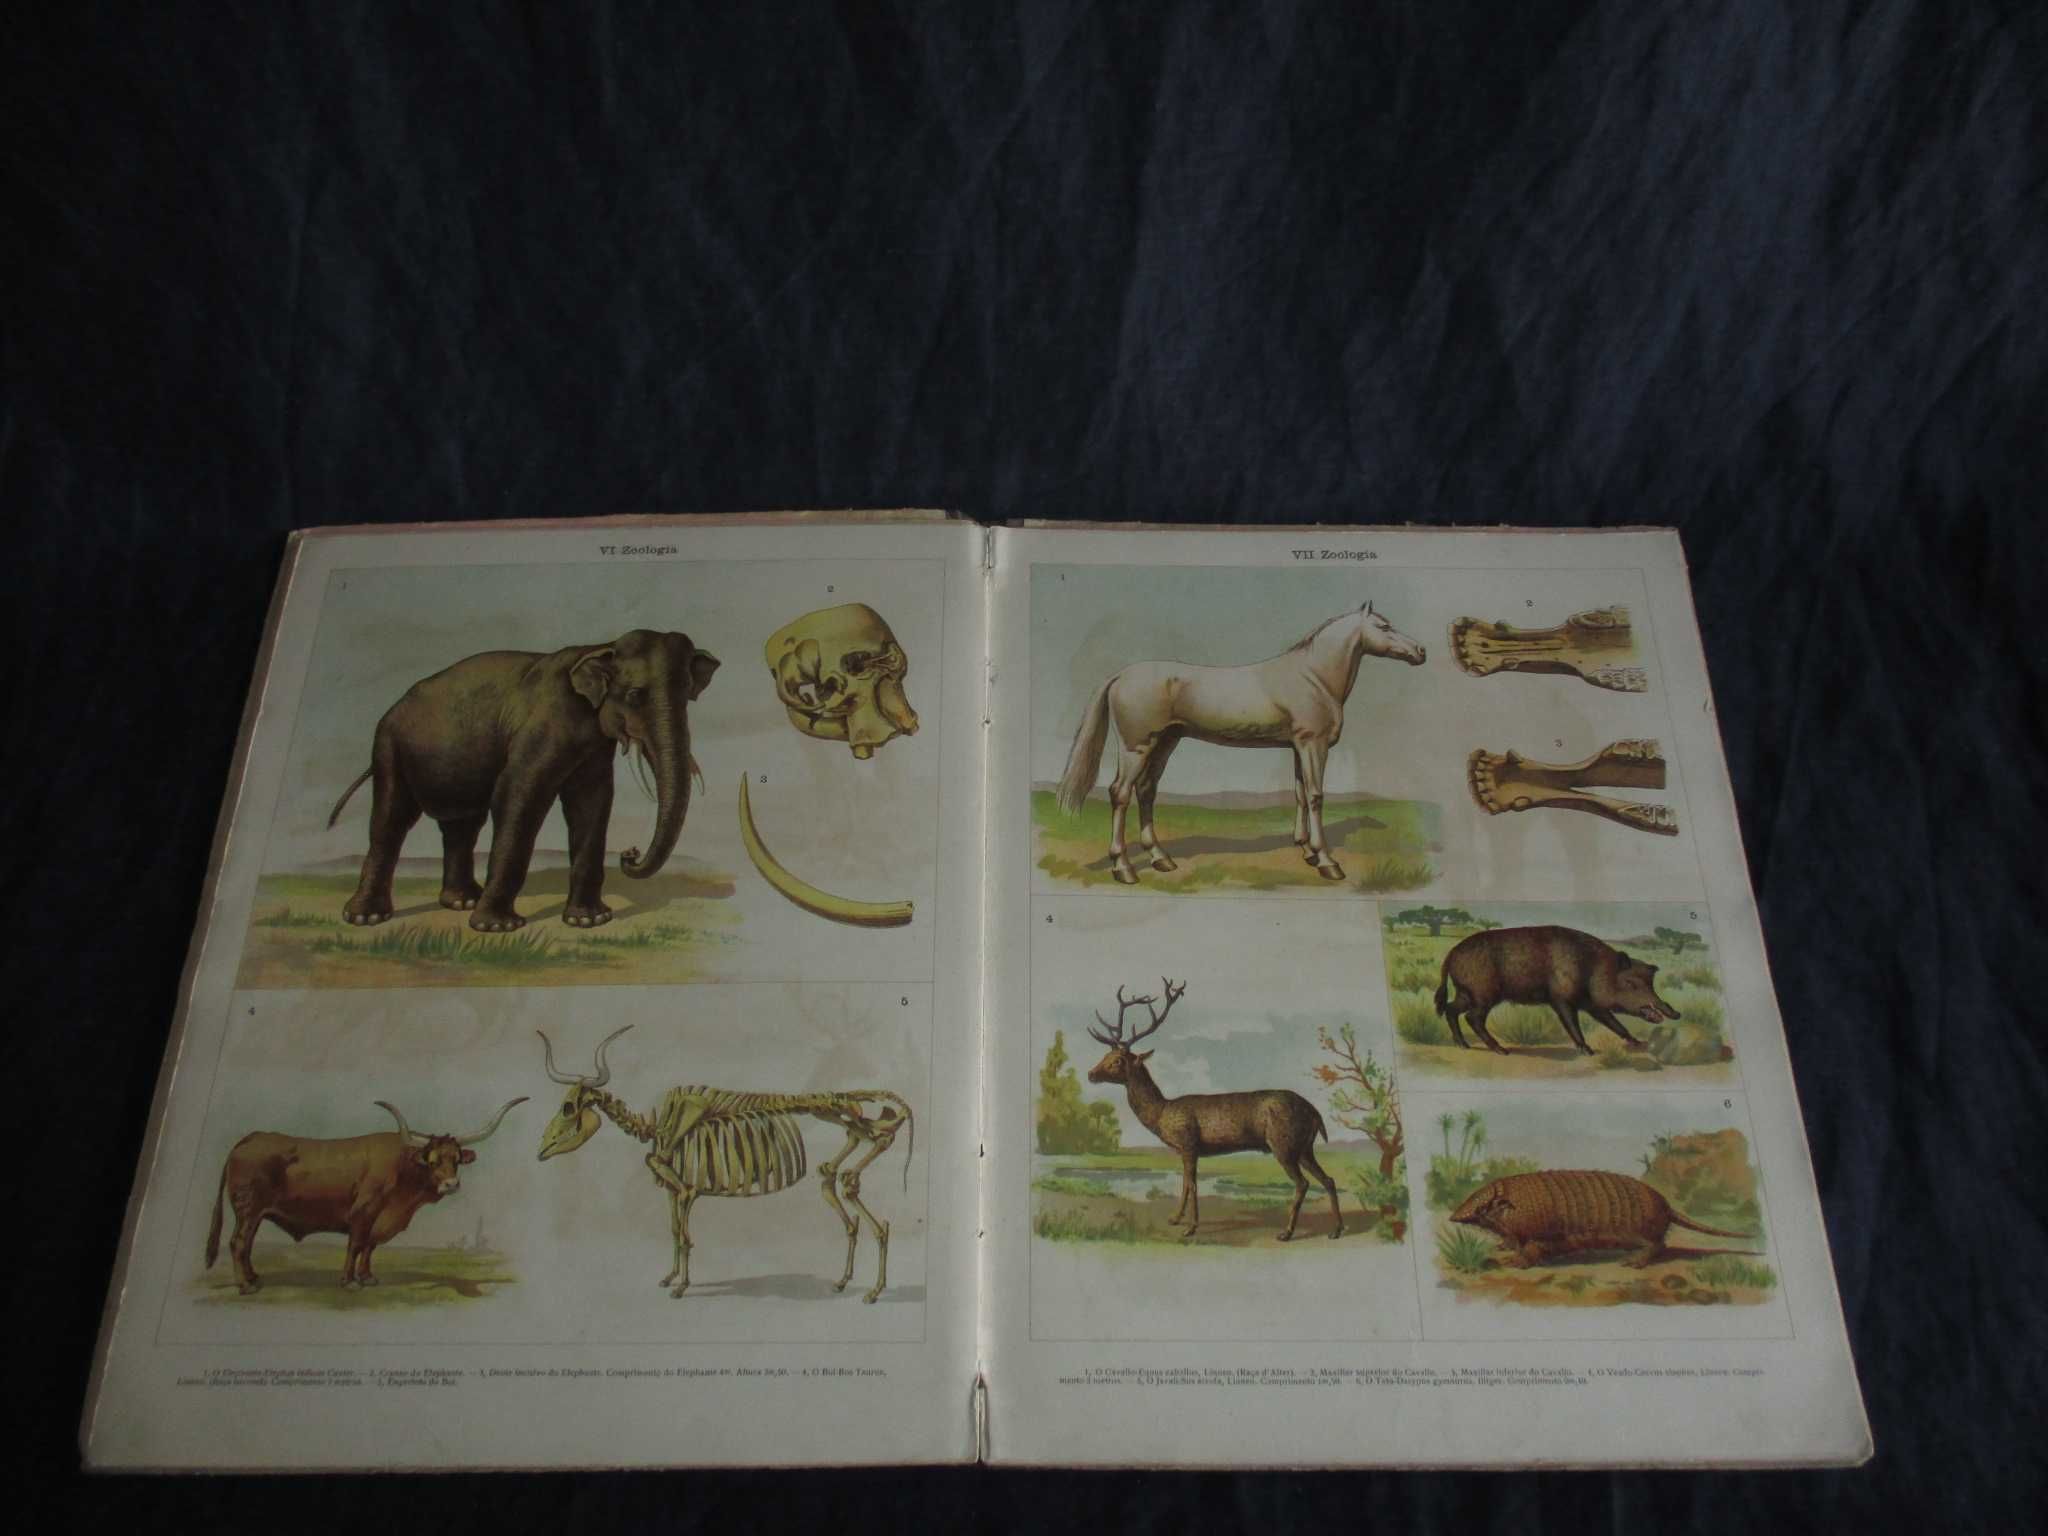 Livro Atlas de Zoologia Baltazar Osório e Mattoso Santos